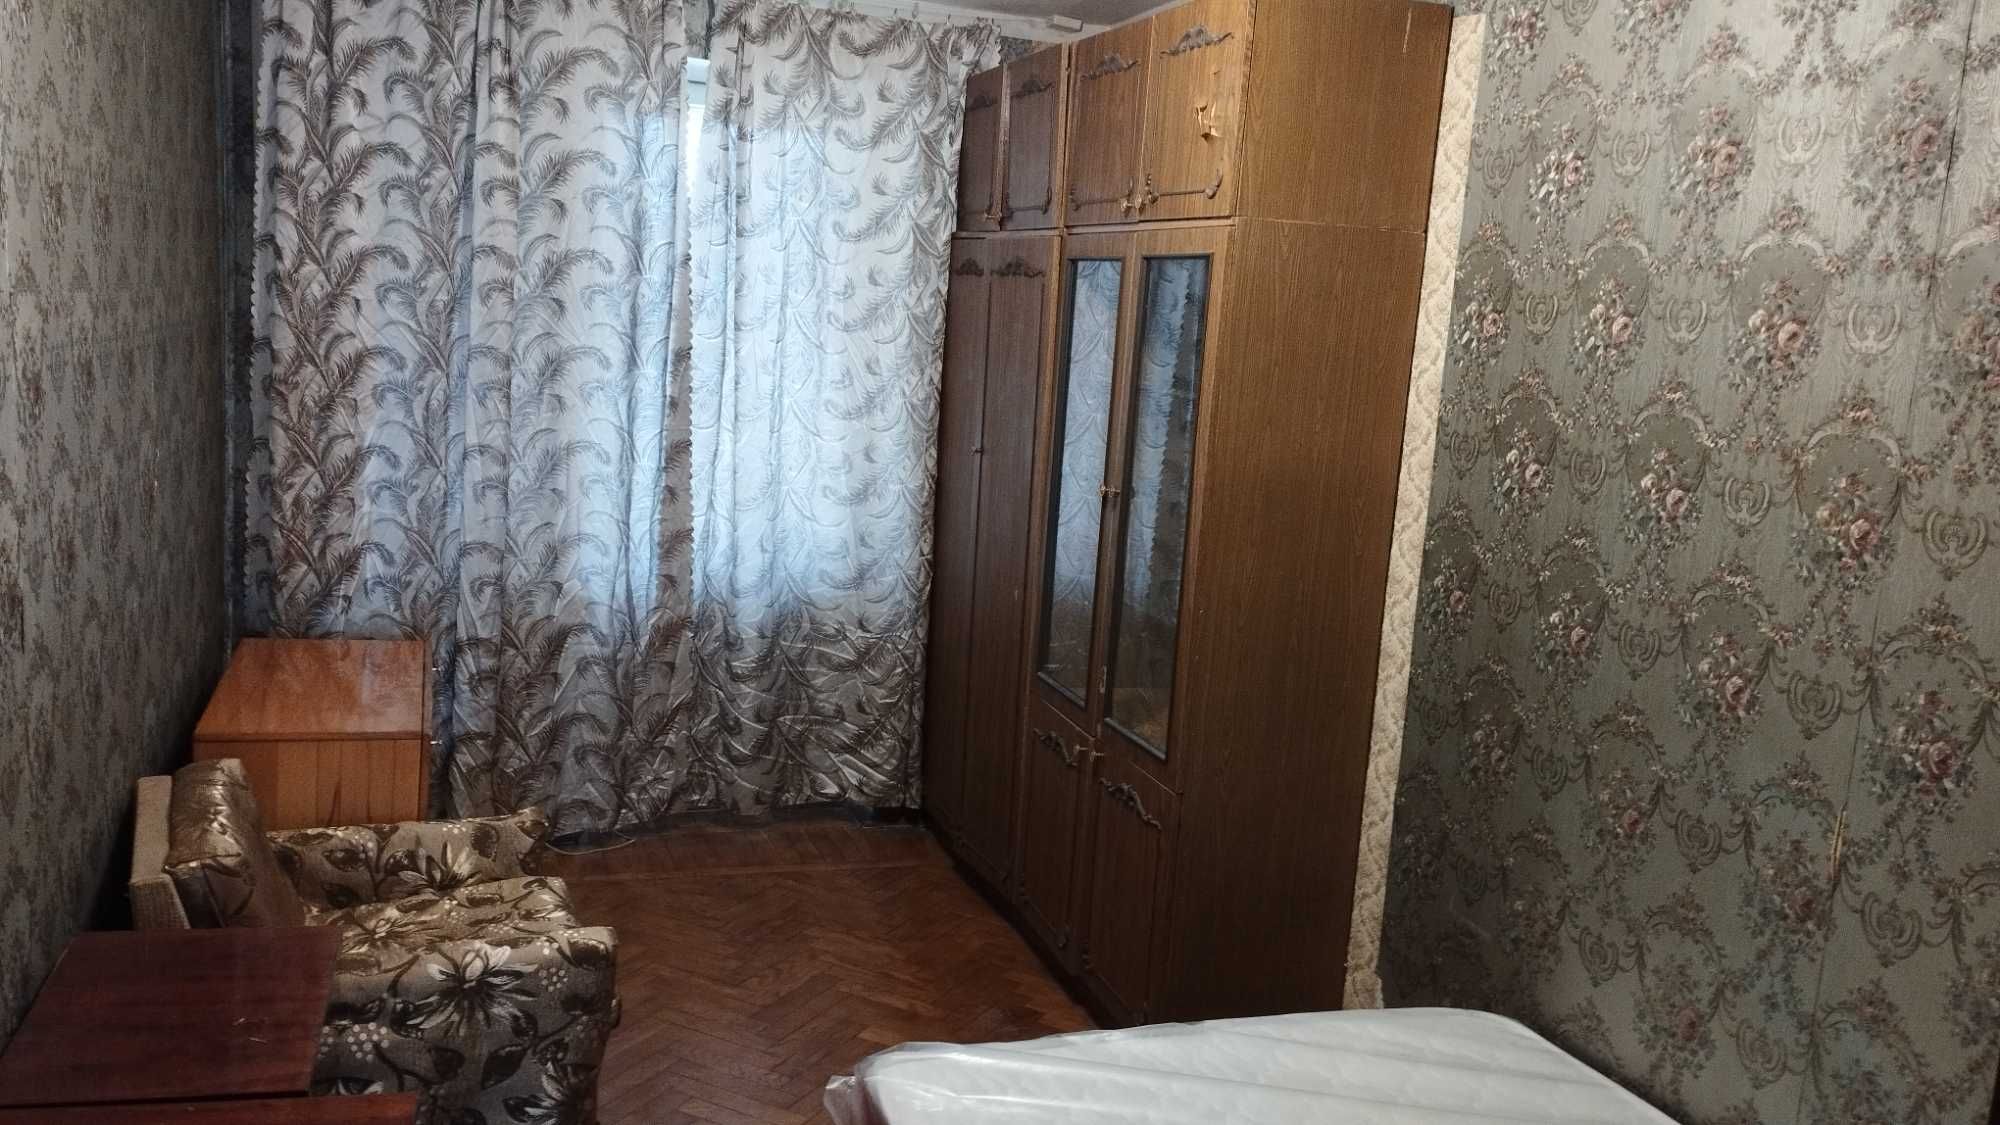 Квартира 3 комн на Глушко 14 (Киевский рынок). От хозяина.